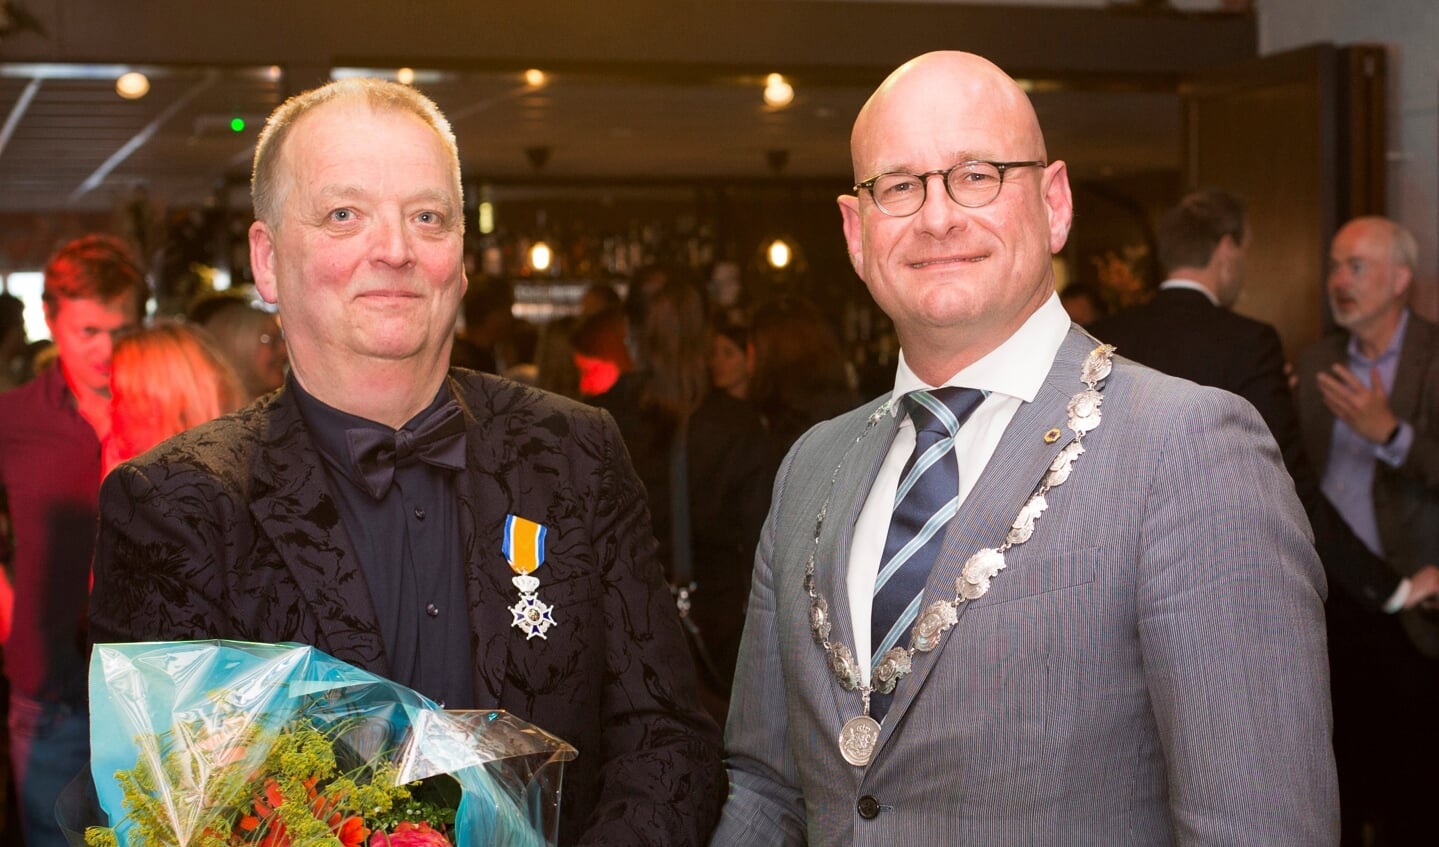 Burgemeester Jan Nieuwenburg reikte 12 mei in Hoofddorp het lintje uit, op de feestelijke bijeenkomst rond de pensionering van Hans Vonk. 